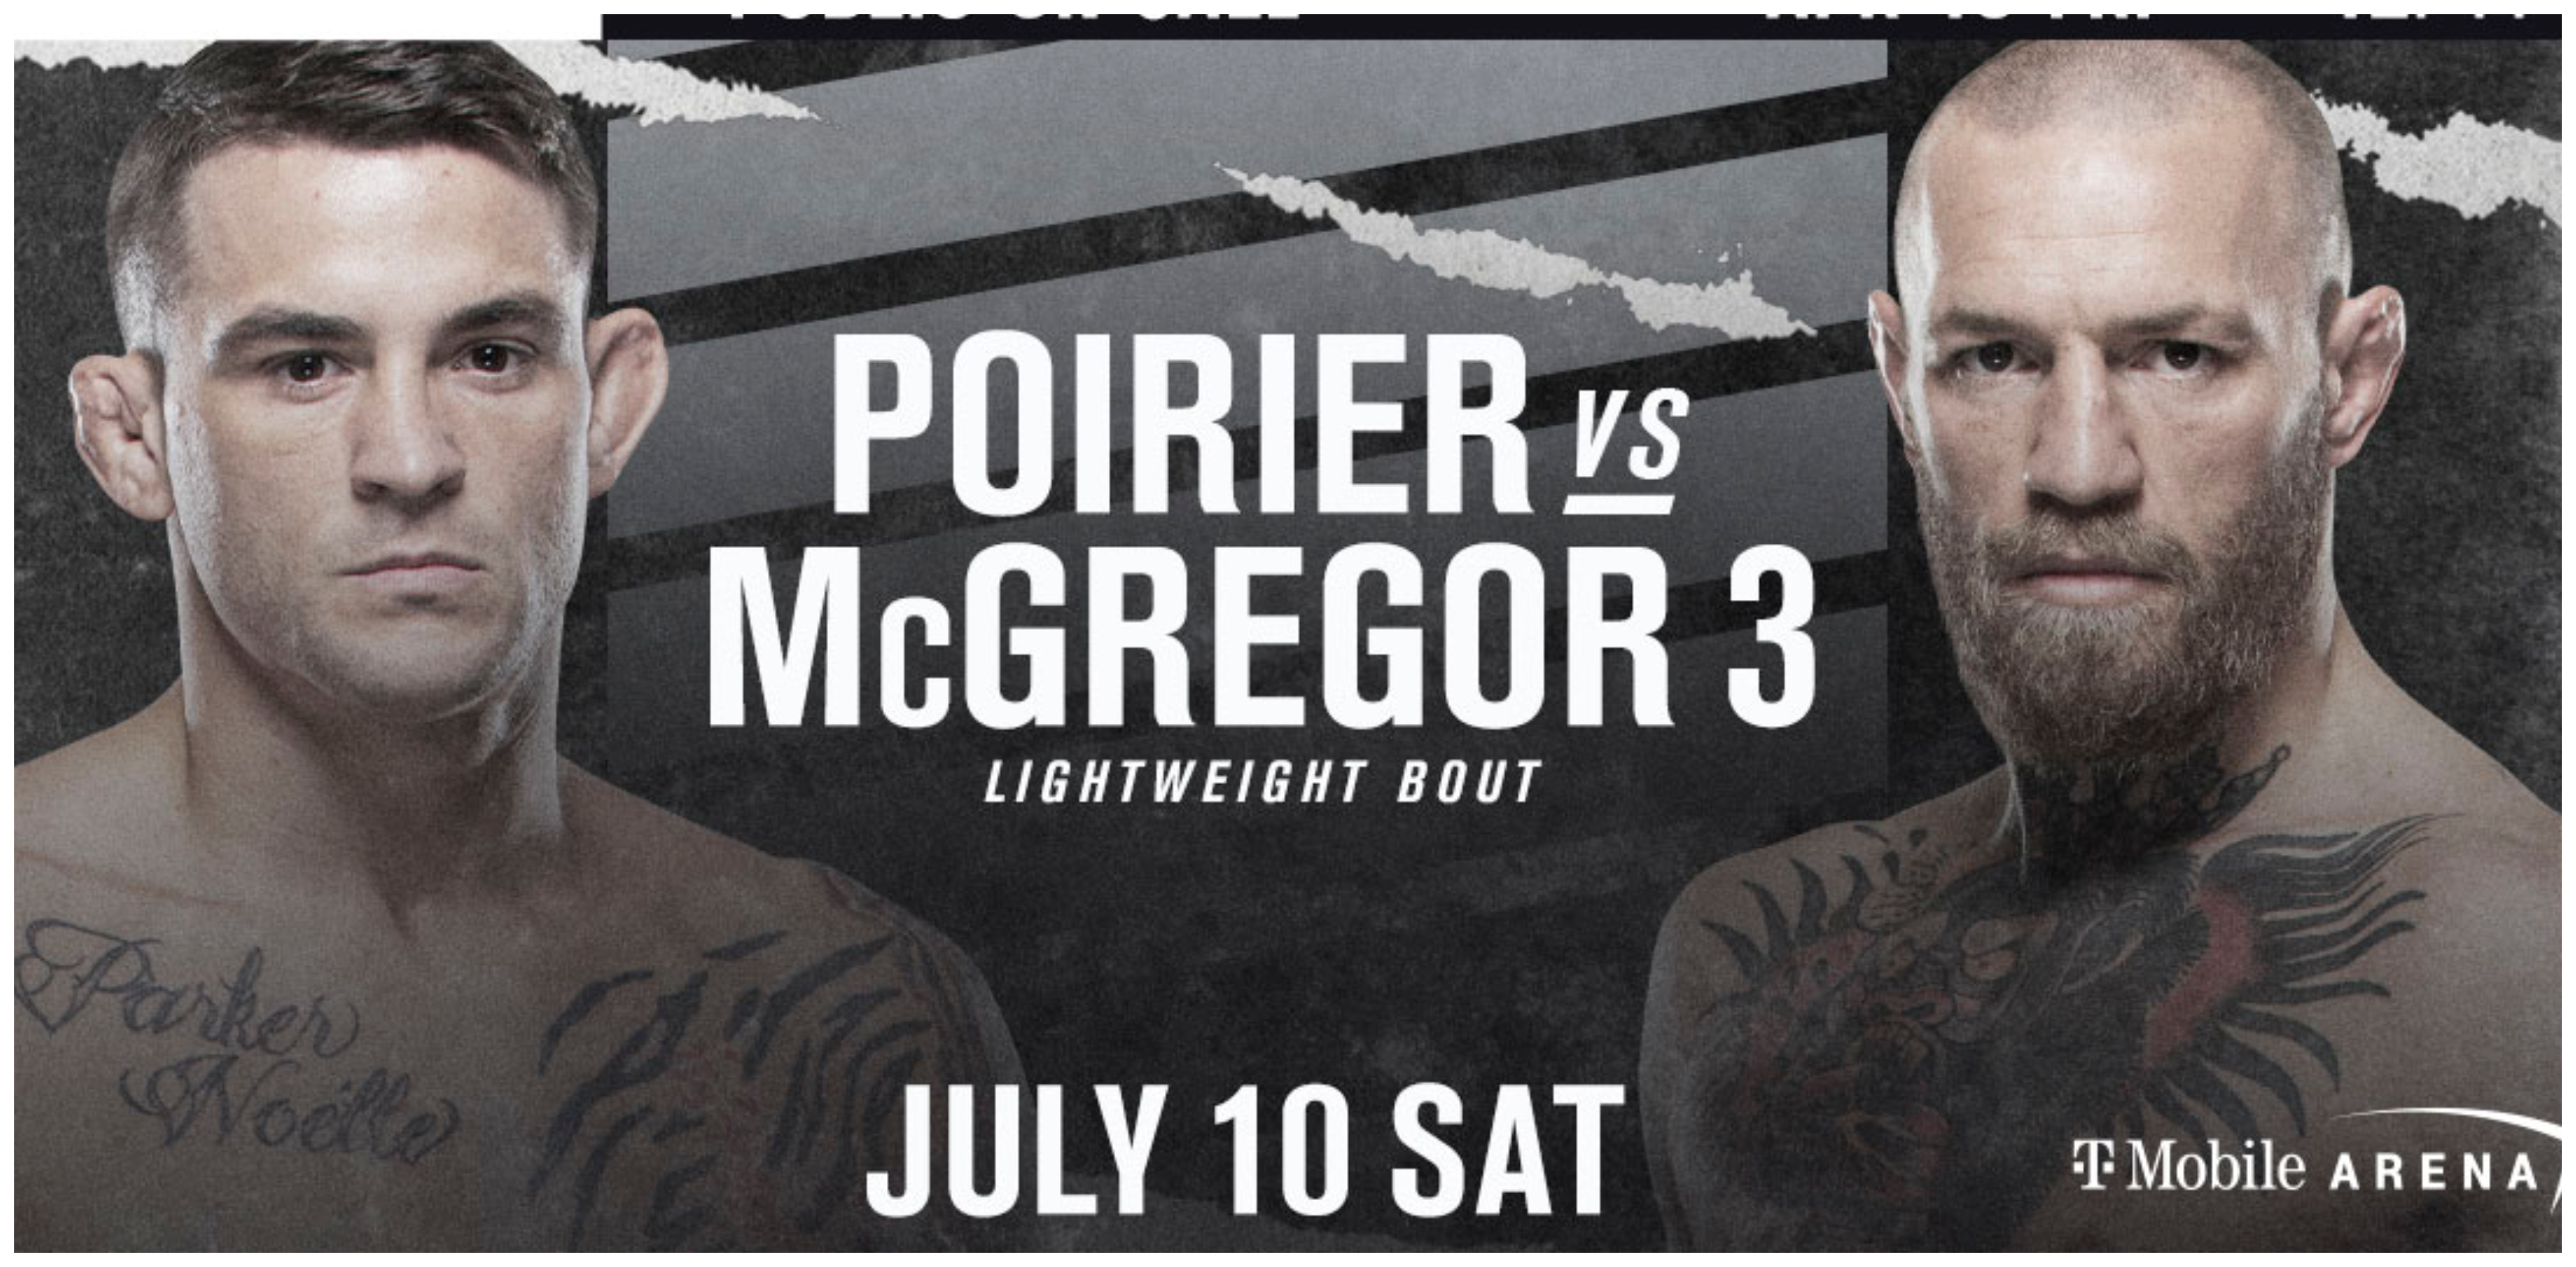 La tercera pelea de artes marciales mixtas entre el irlandés Conor McGregor y el estadounidense Dustin Poirier se disputará en Las Vegas en julio sin restricciones de público en julio. Foto Prensa Libre: @ufc